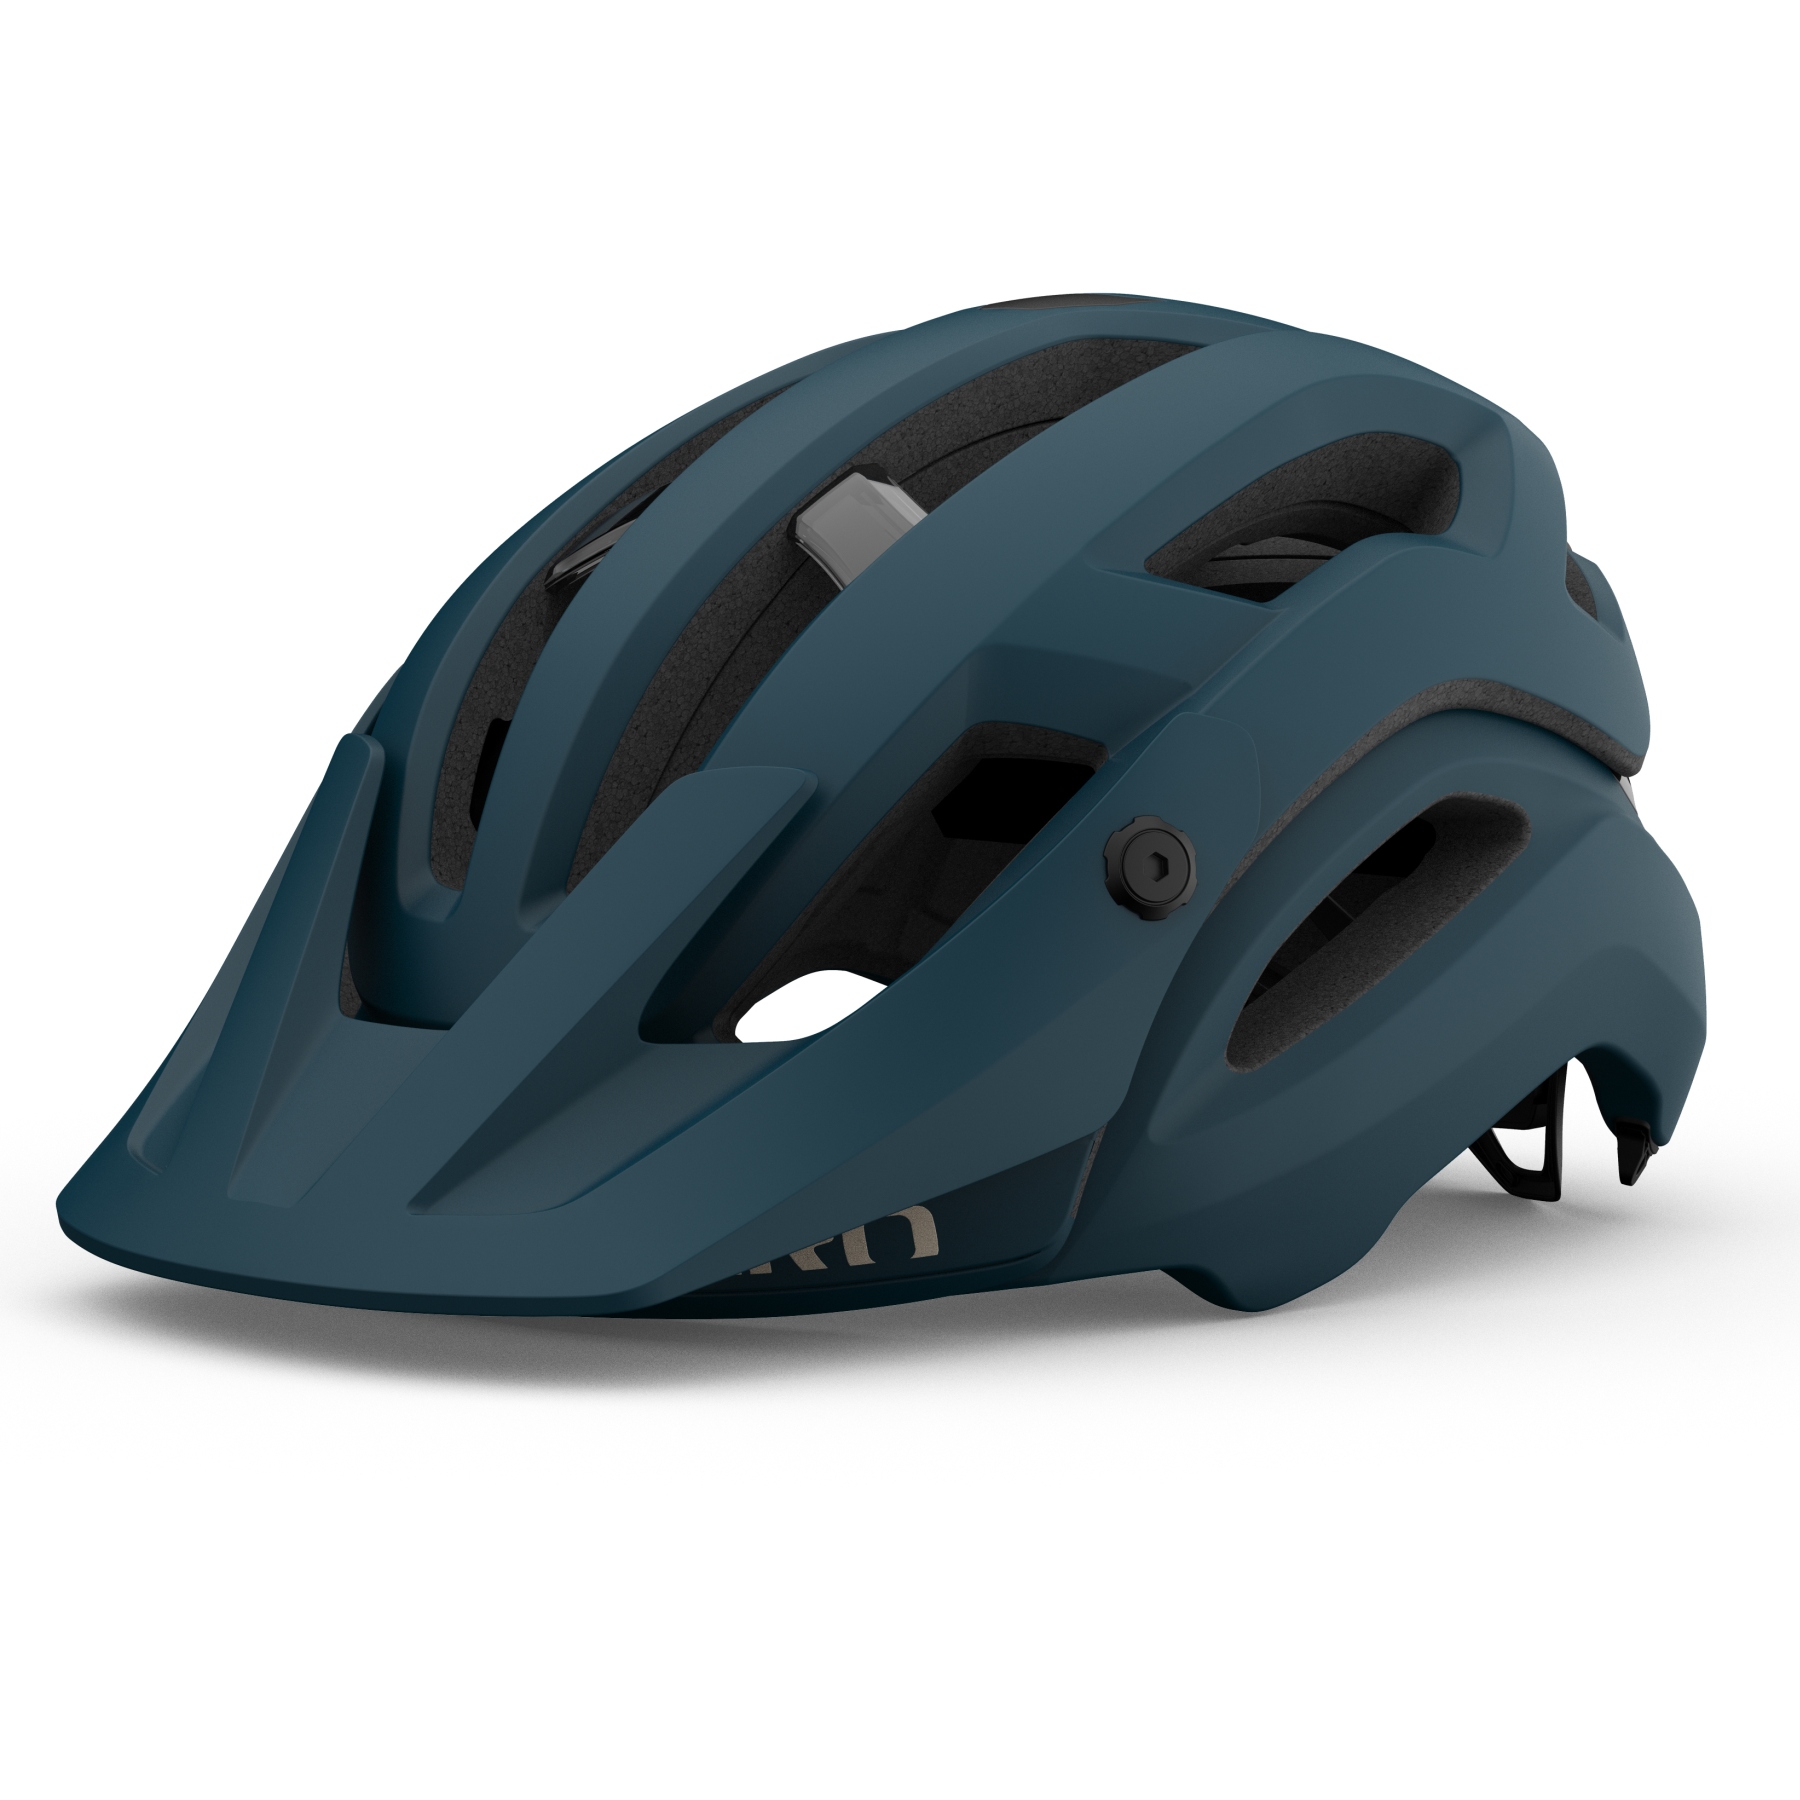 Produktbild von Giro Manifest Spherical Helm - matte harbor blue